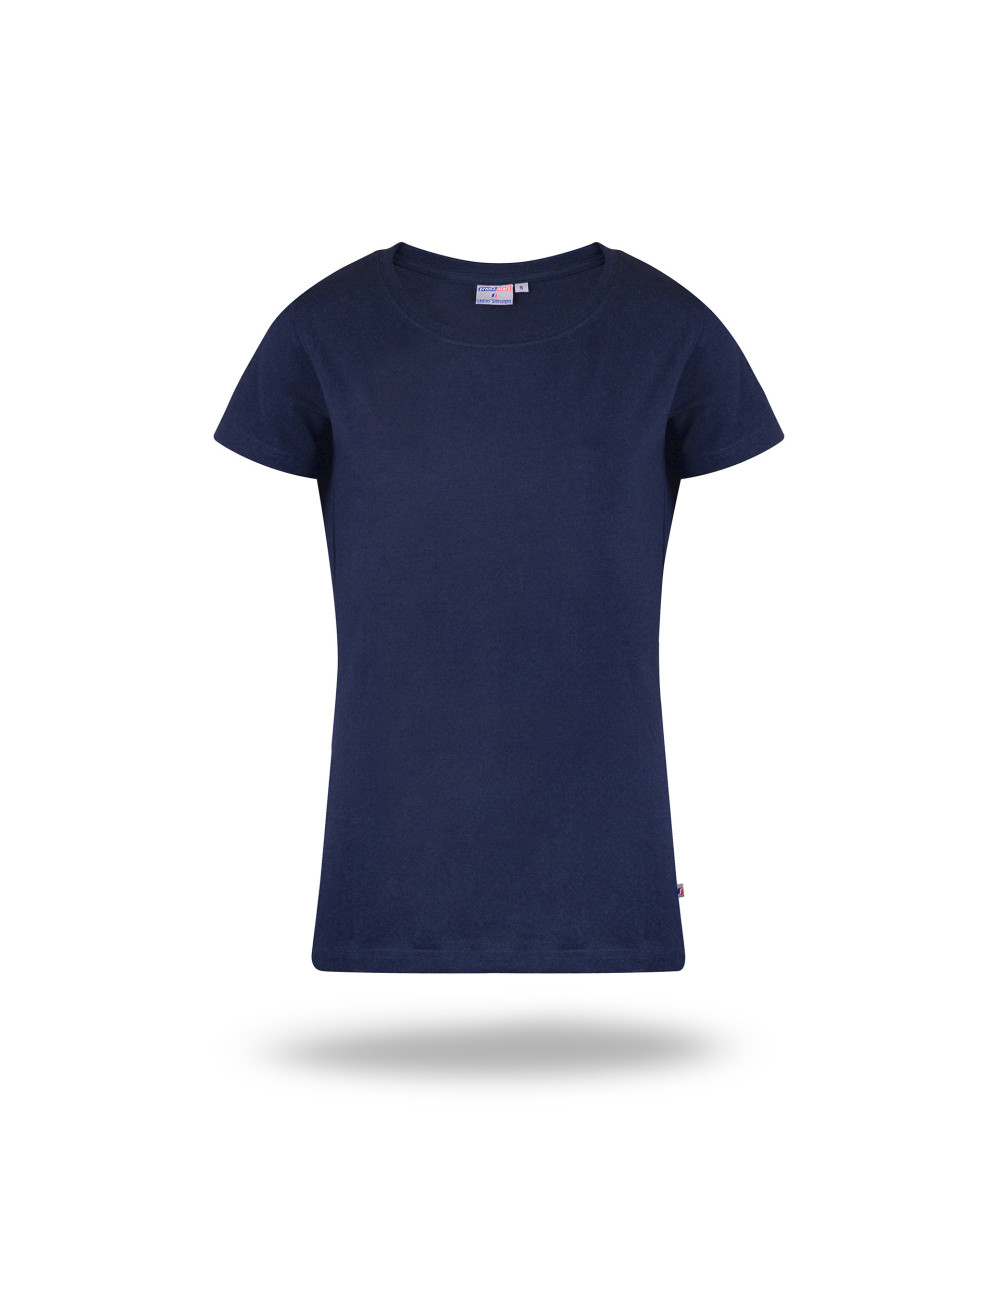 Schlankes Damen-T-Shirt für Damen in Hellblau von Promostars